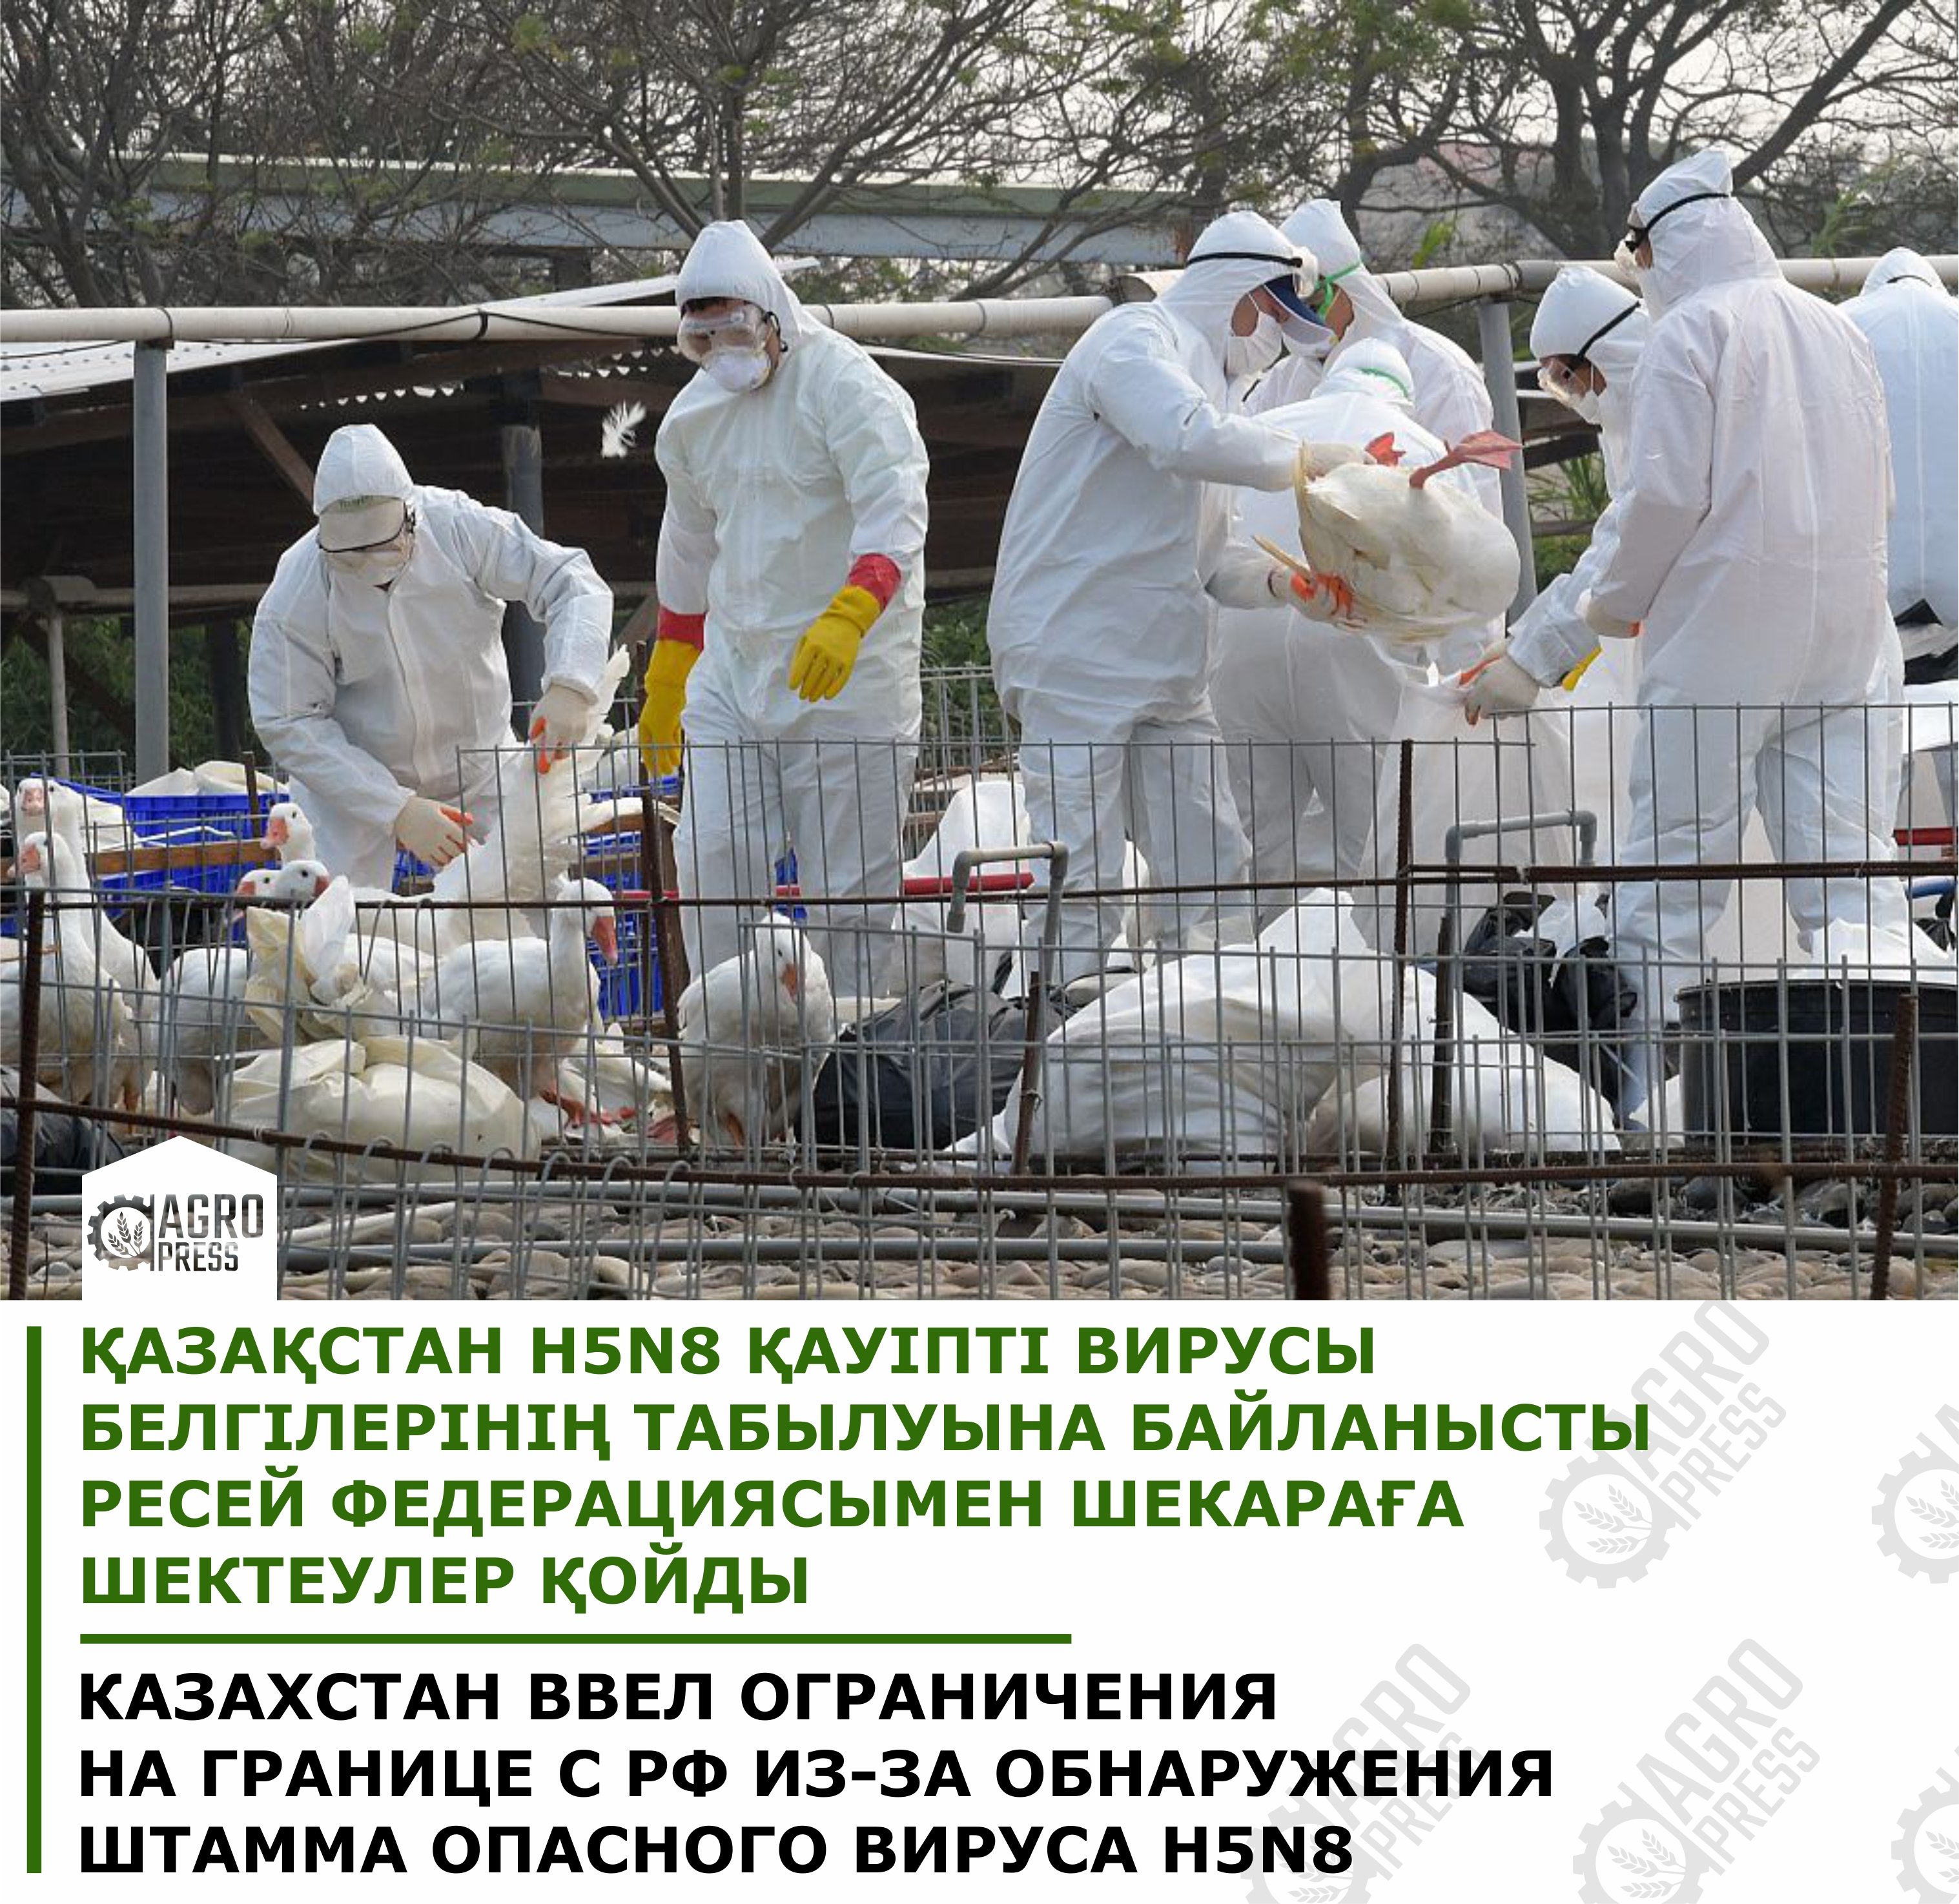 Қазақстан H5N8 қауіпті вирусы белгілерінің табылуына байланысты Ресей Федерациясымен шекараға шектеулер қойды